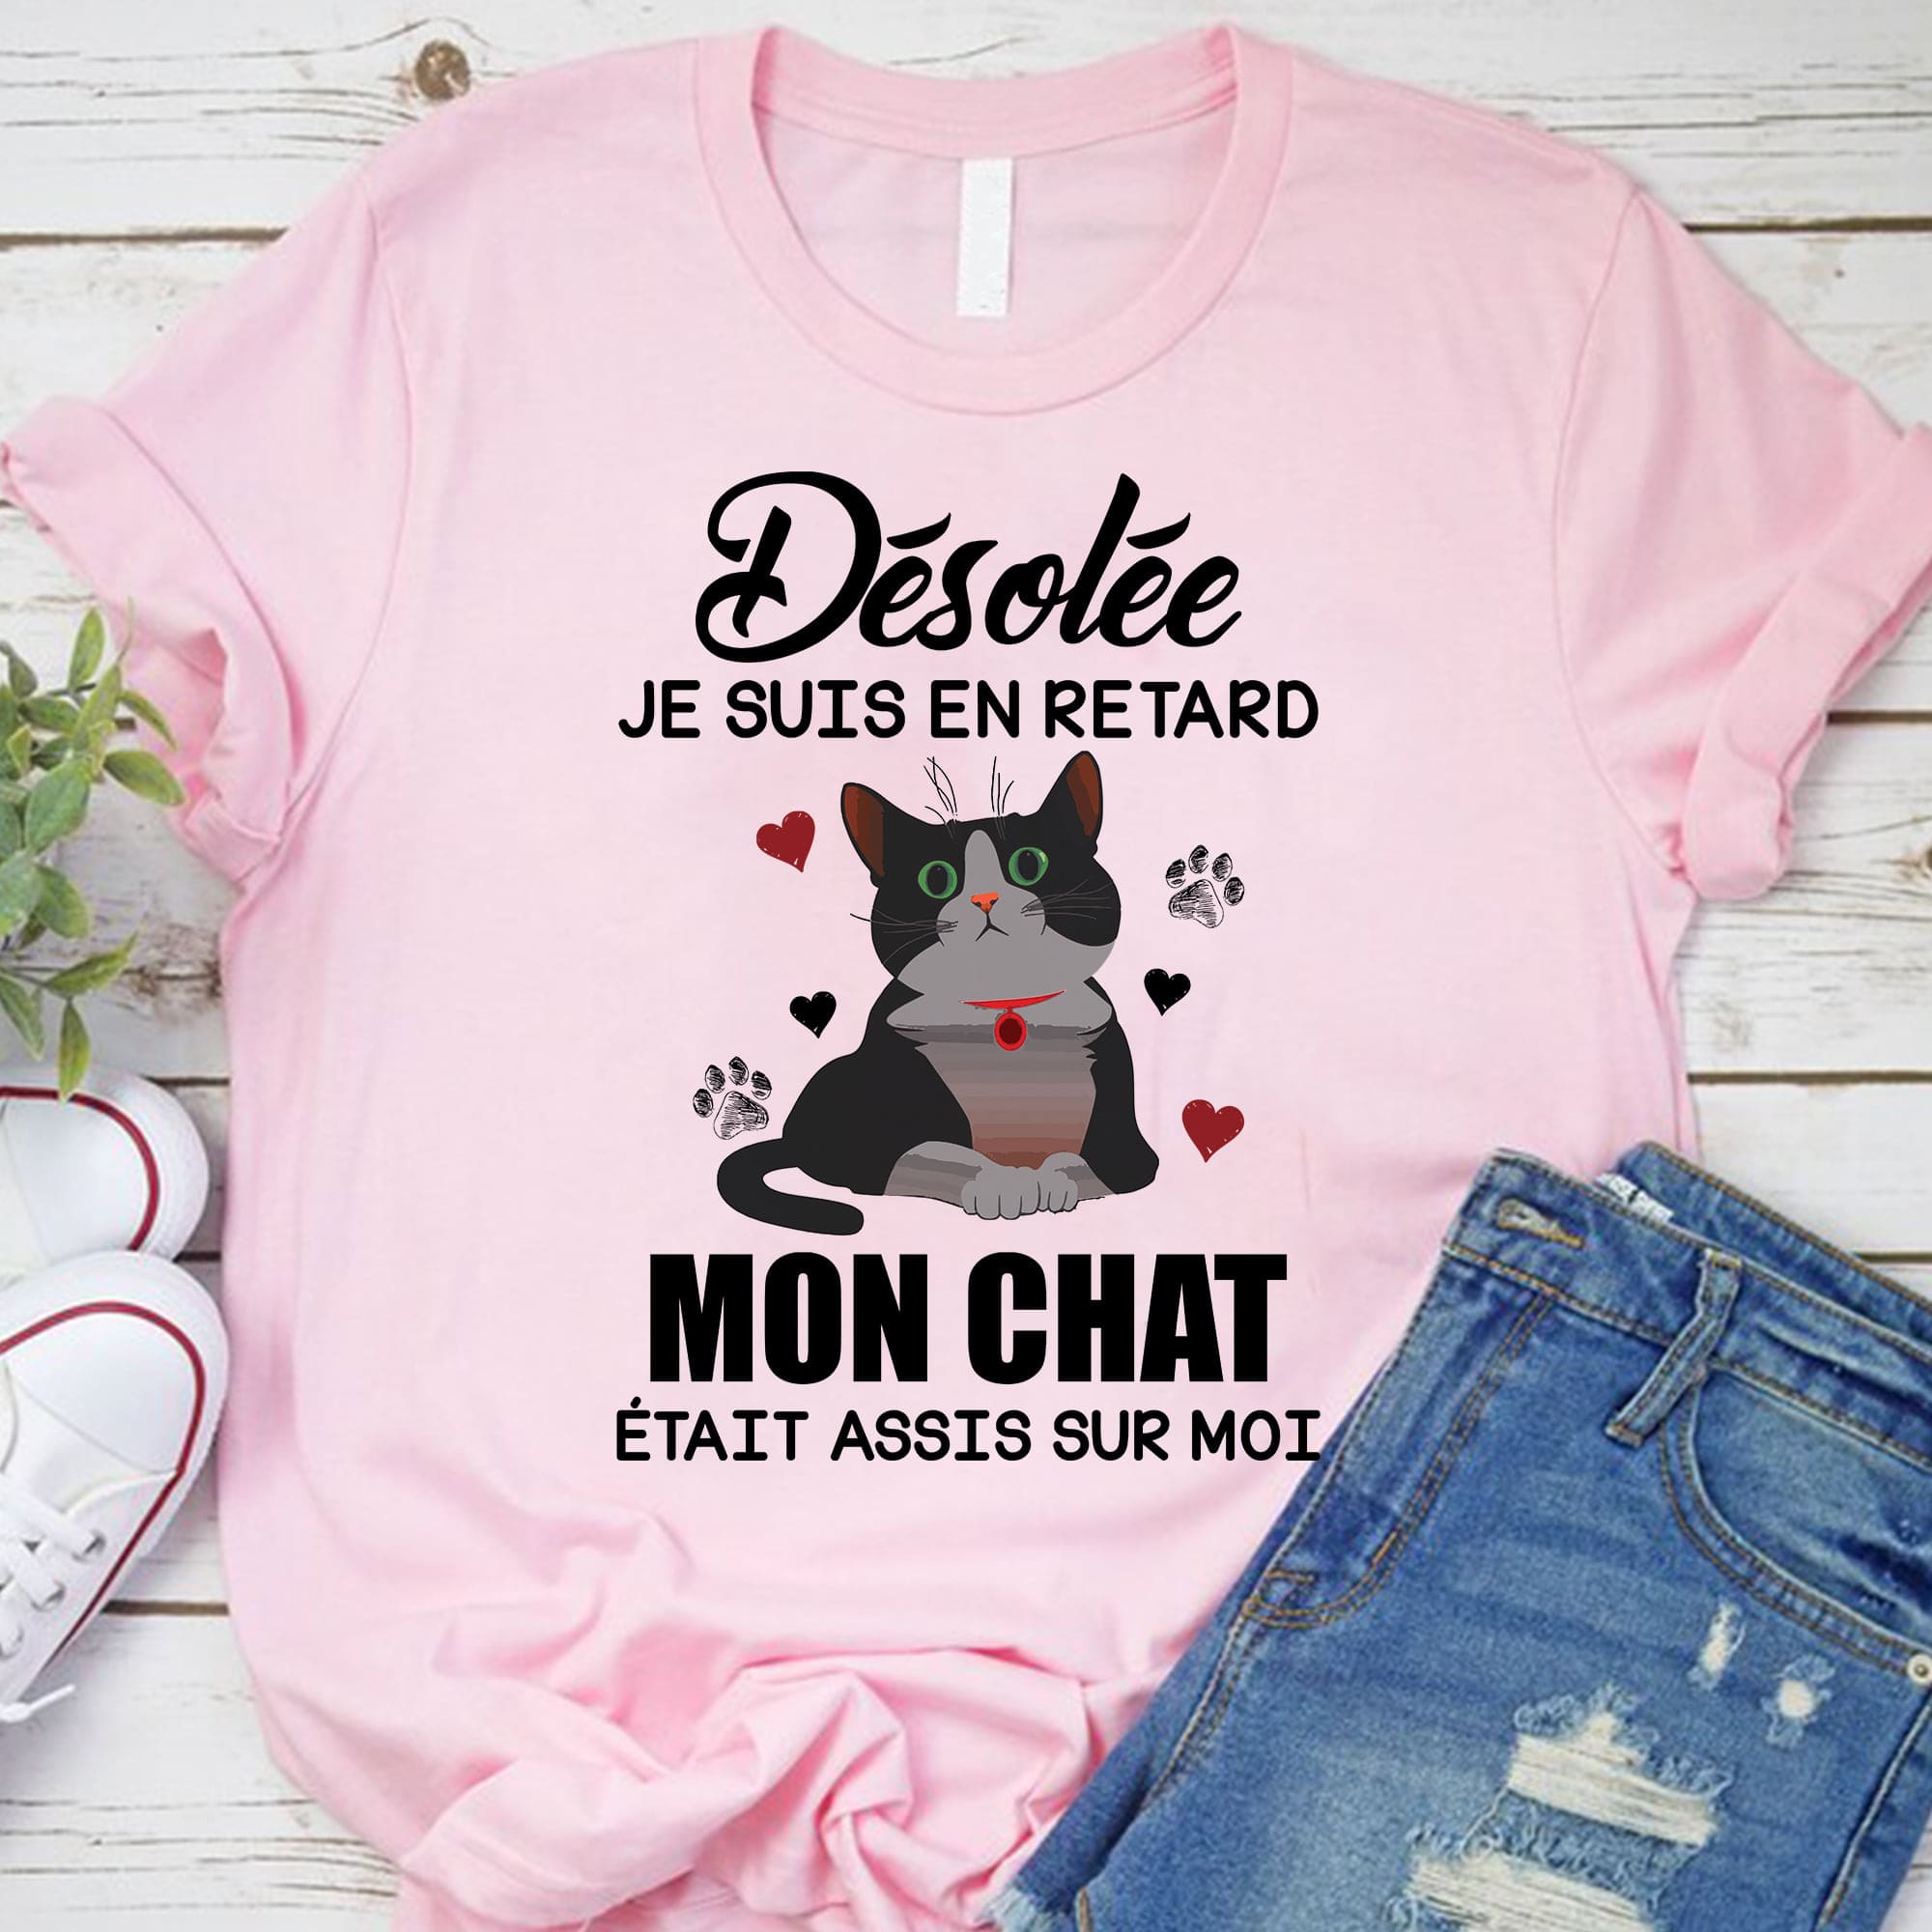 Cute Cat Graphic T-shirt - Desolee je suis en retard mon chat etait assis sur moi